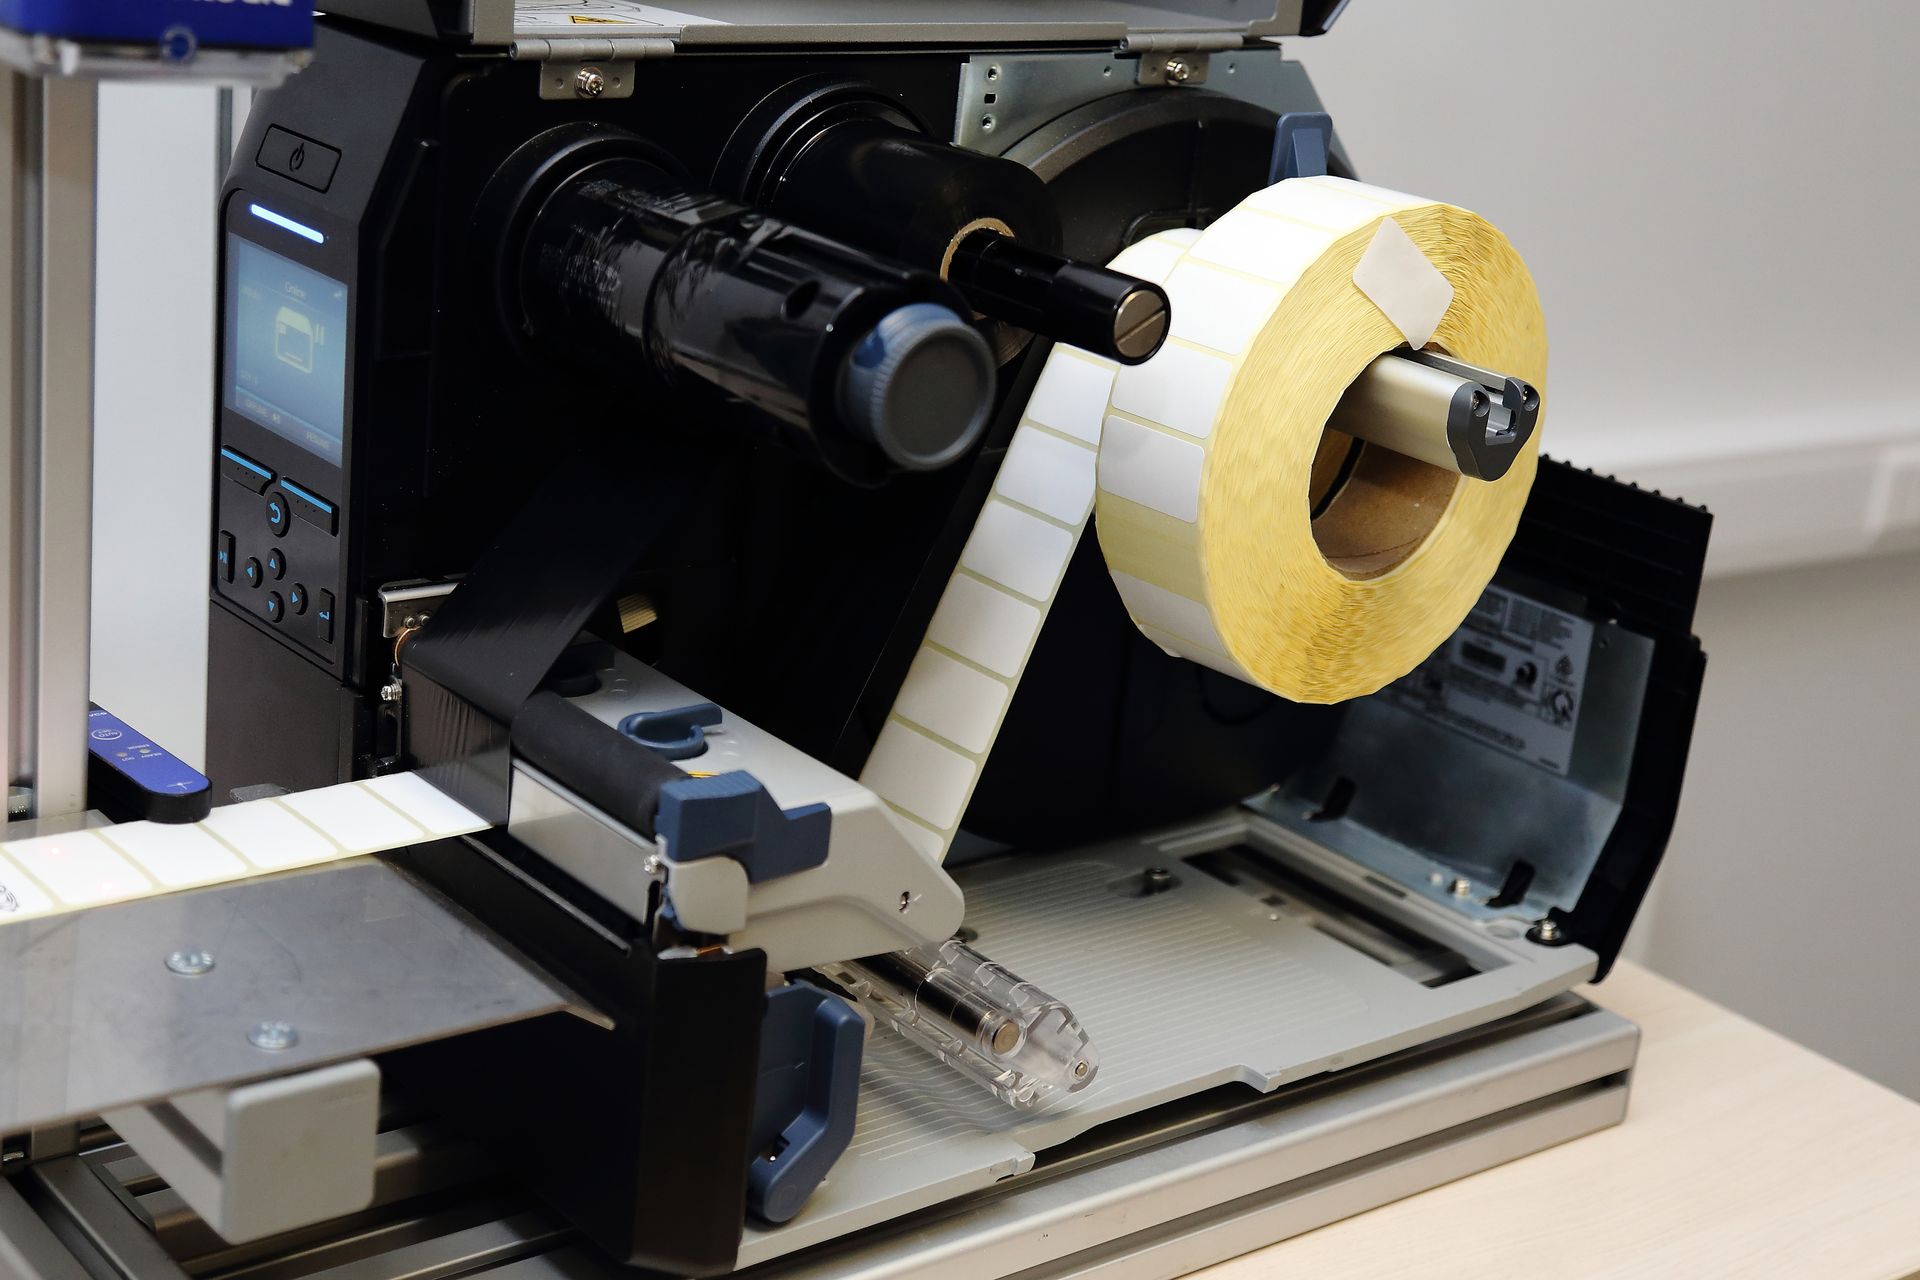 label printer, open revealing inner tape -- printer errors